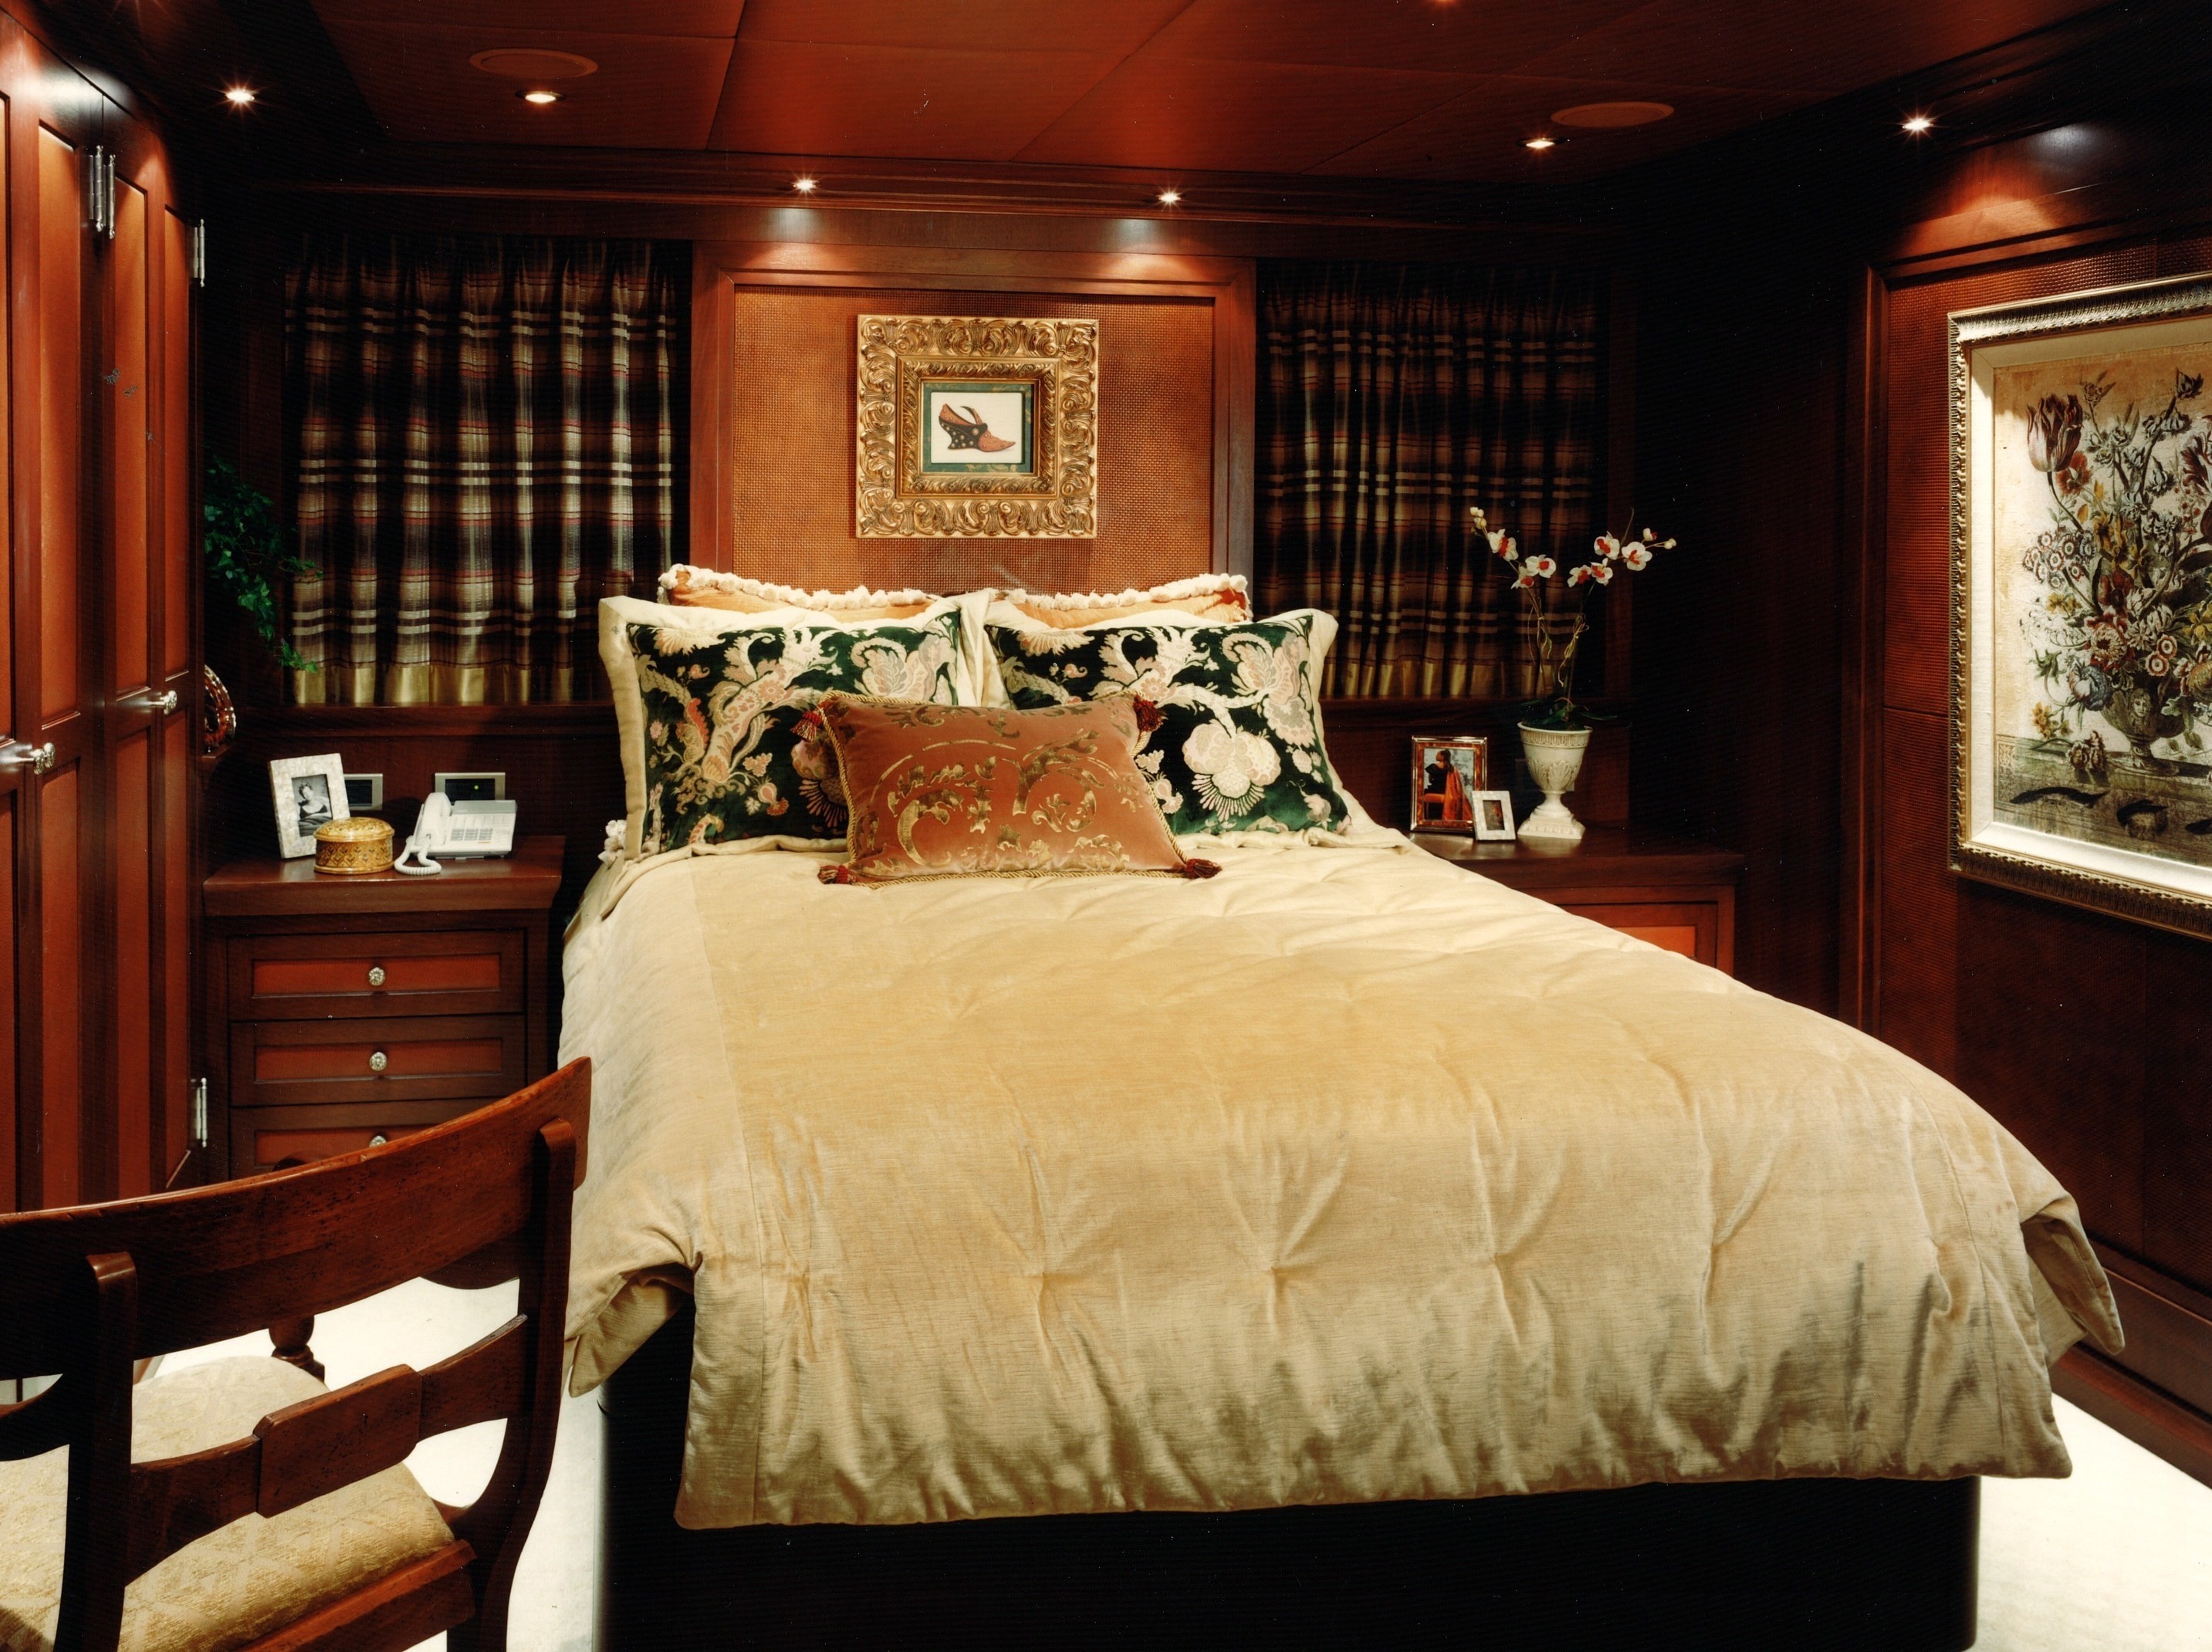 Guest's Cabin On Board Yacht LAGNIAPPE